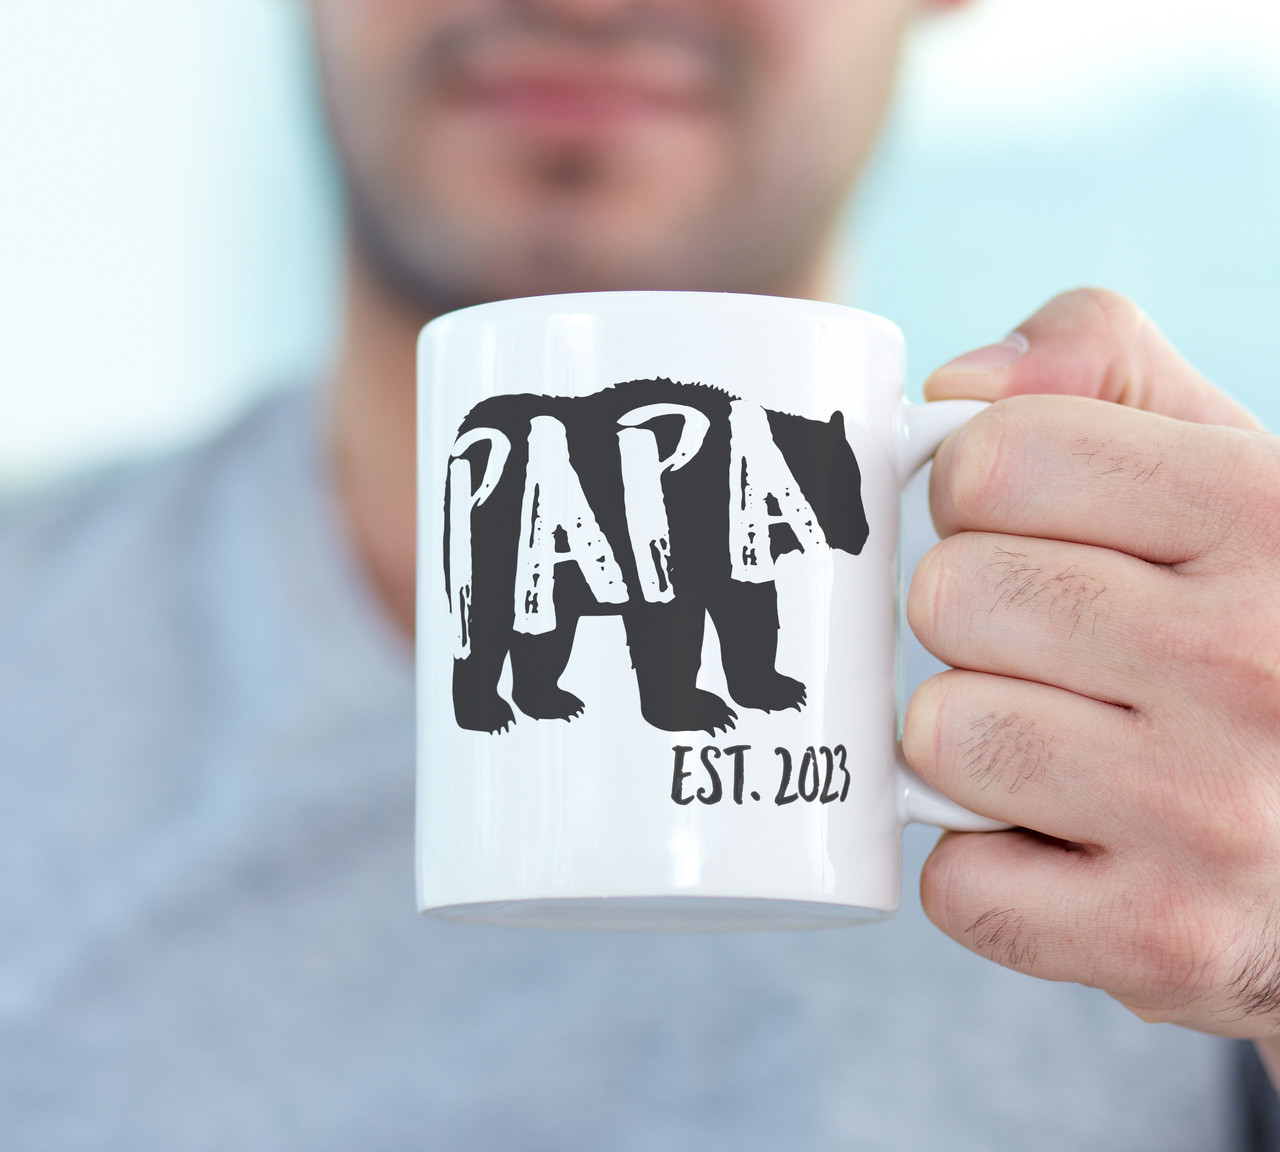 Papa established bear coffee mug